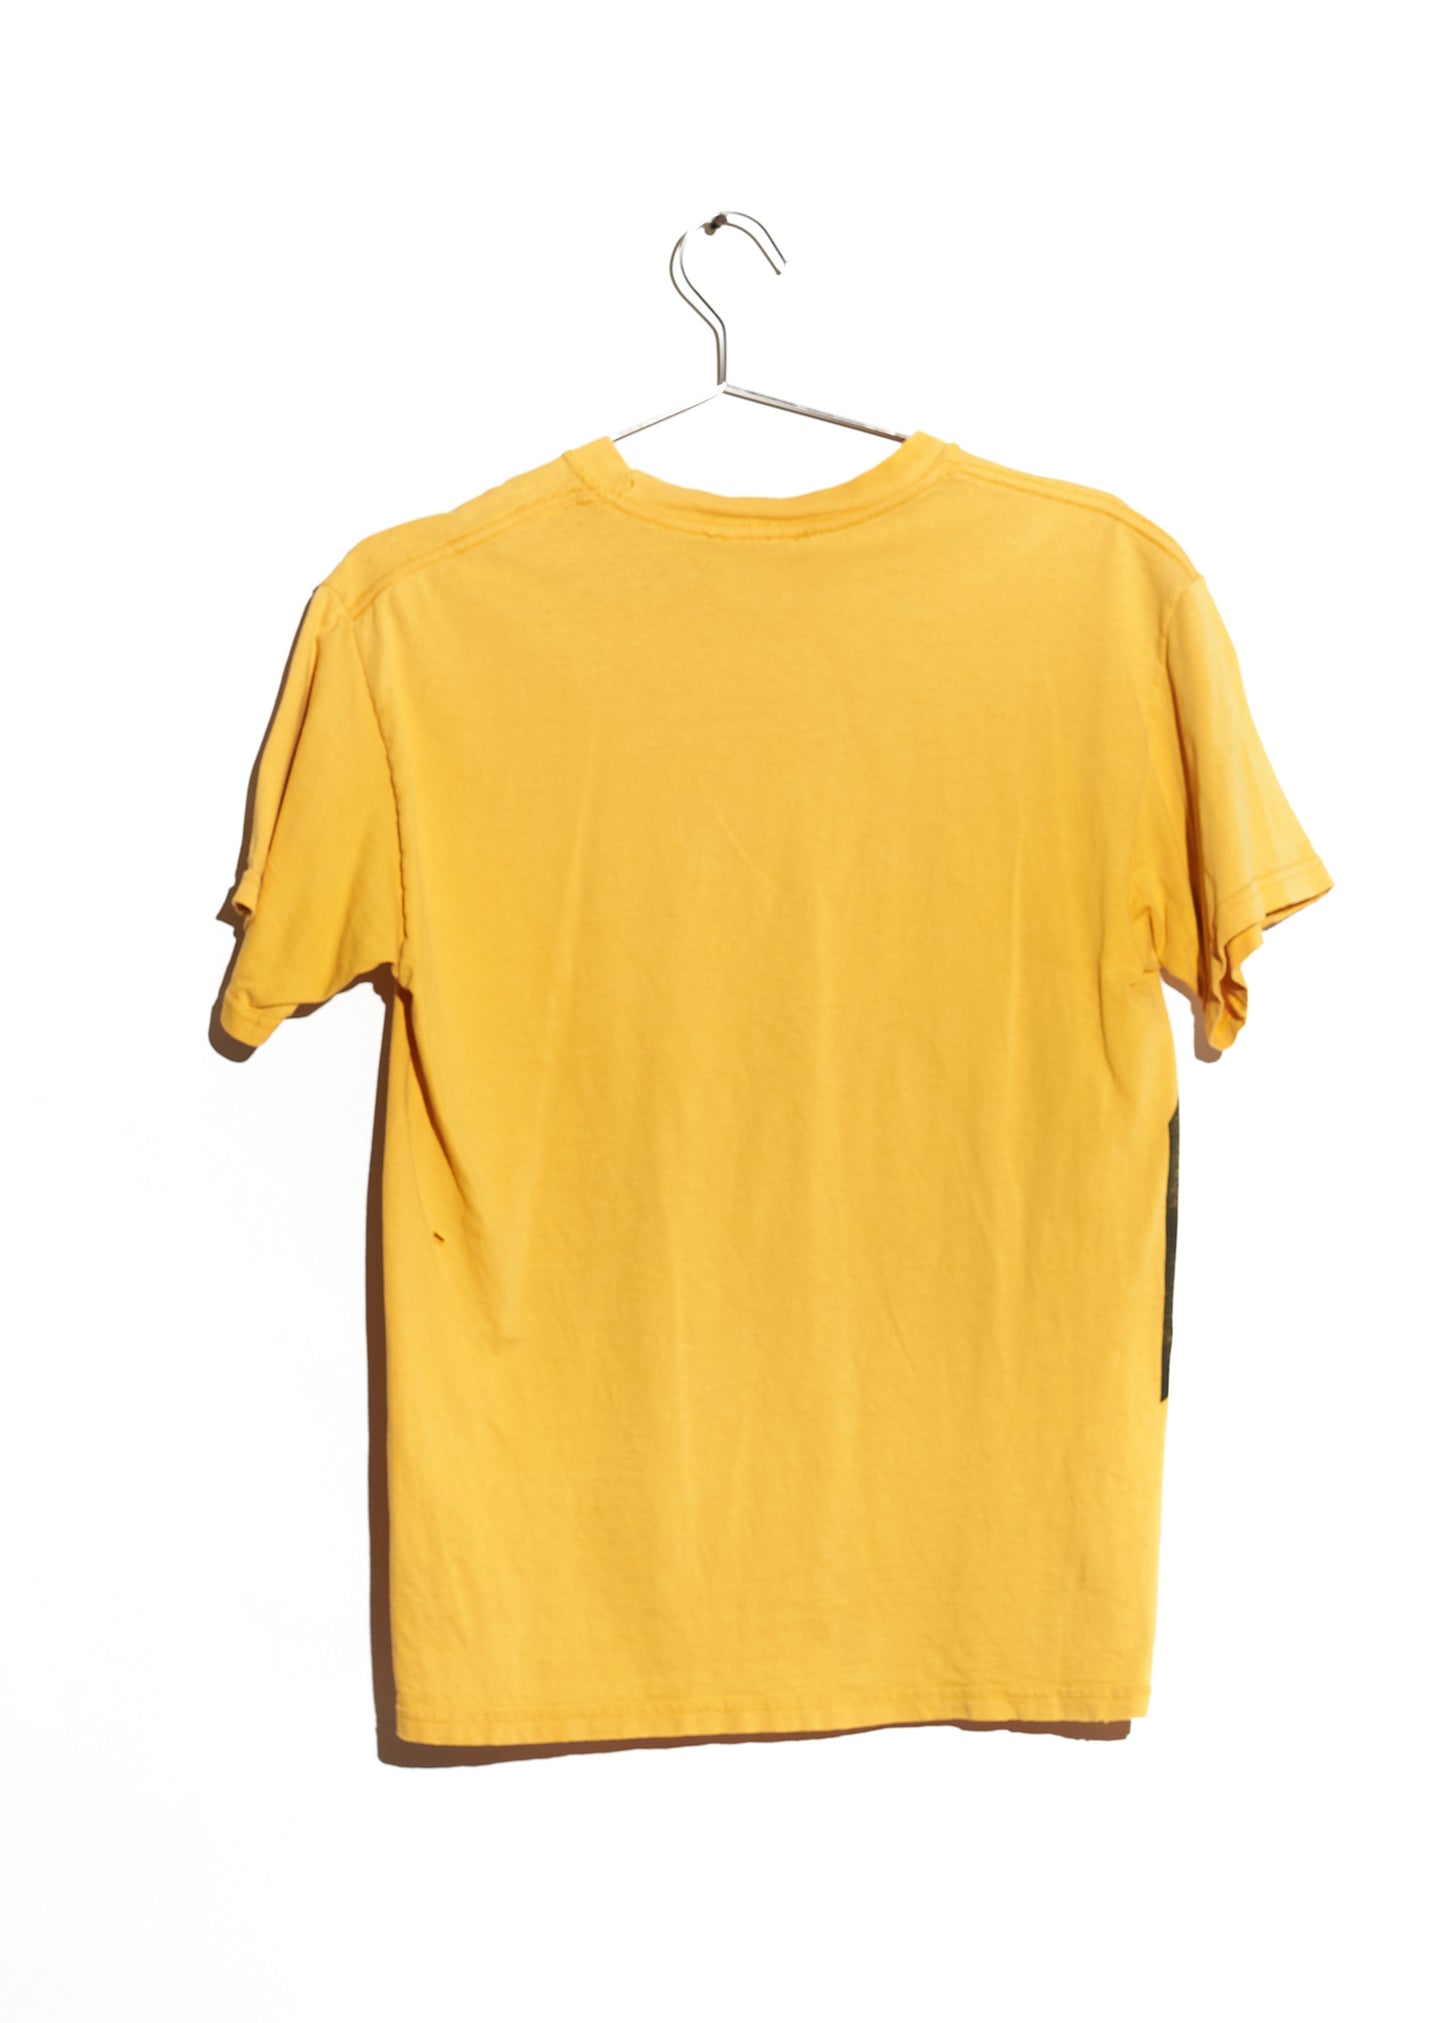 Yellow/Black Graphic T-Shirt